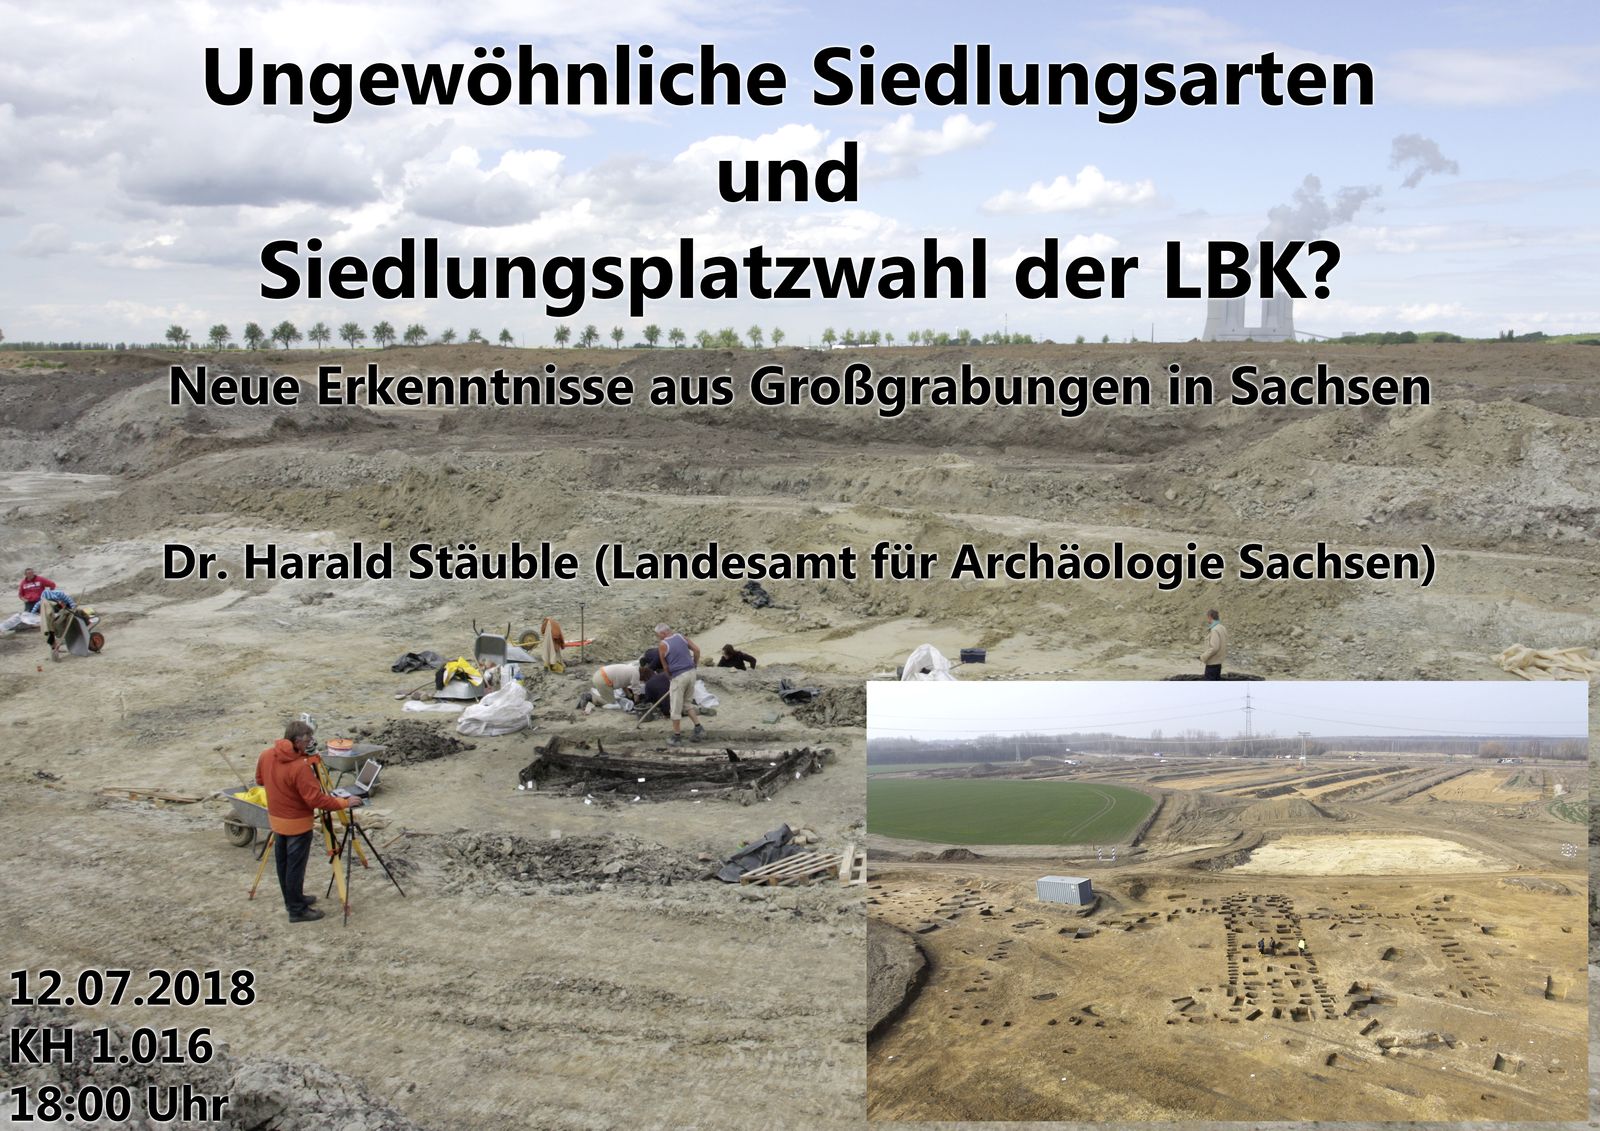 Neue Erkenntnisse aus Großgrabungen in Sachsen